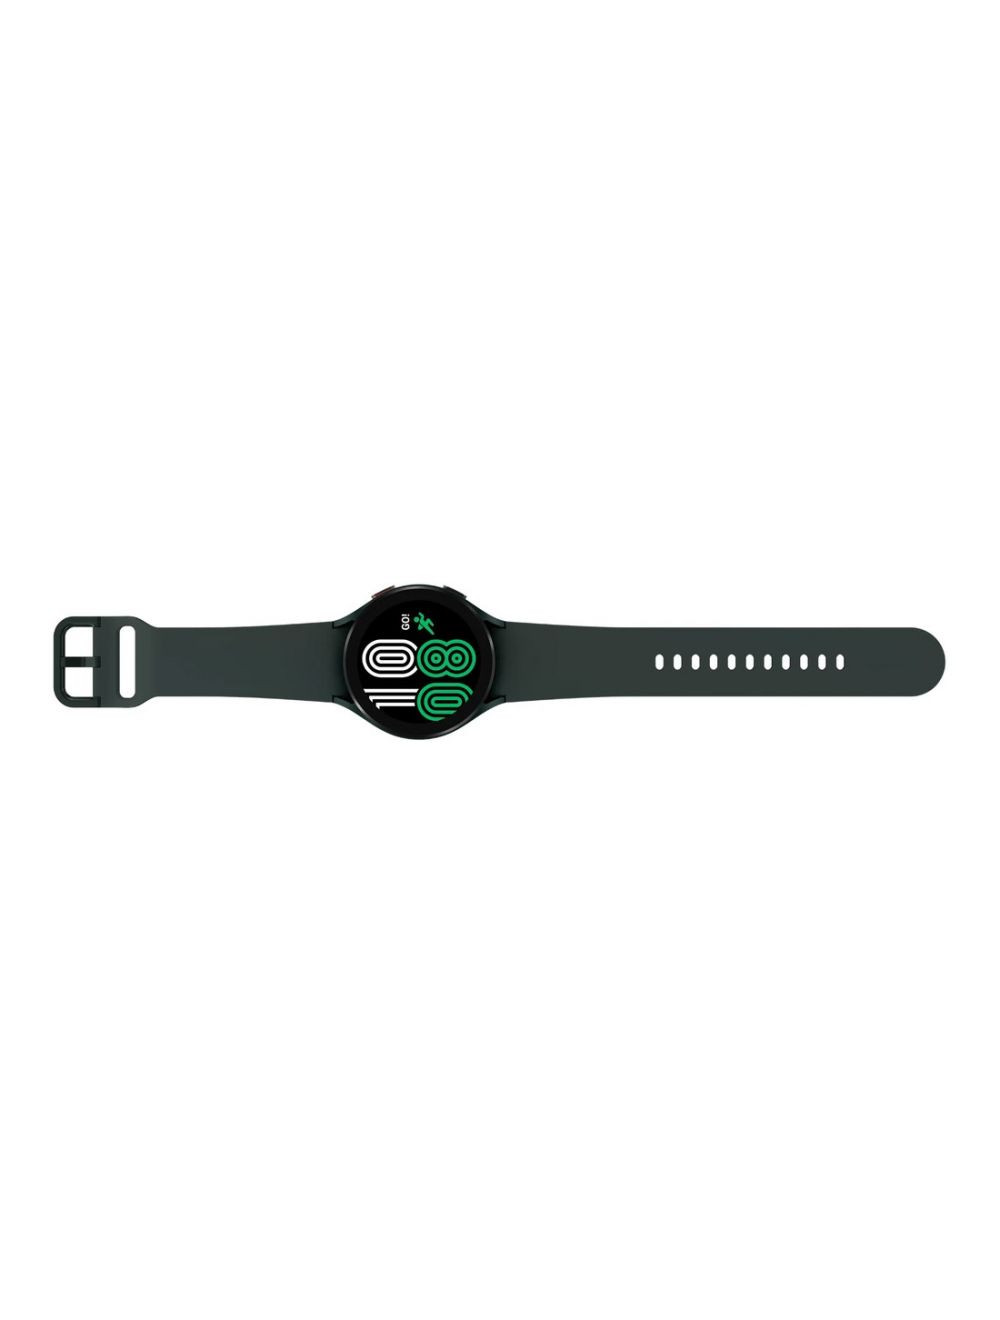 Samsung Galaxy Watch 4 (44mm) Bluetooth SM-R870 - Green